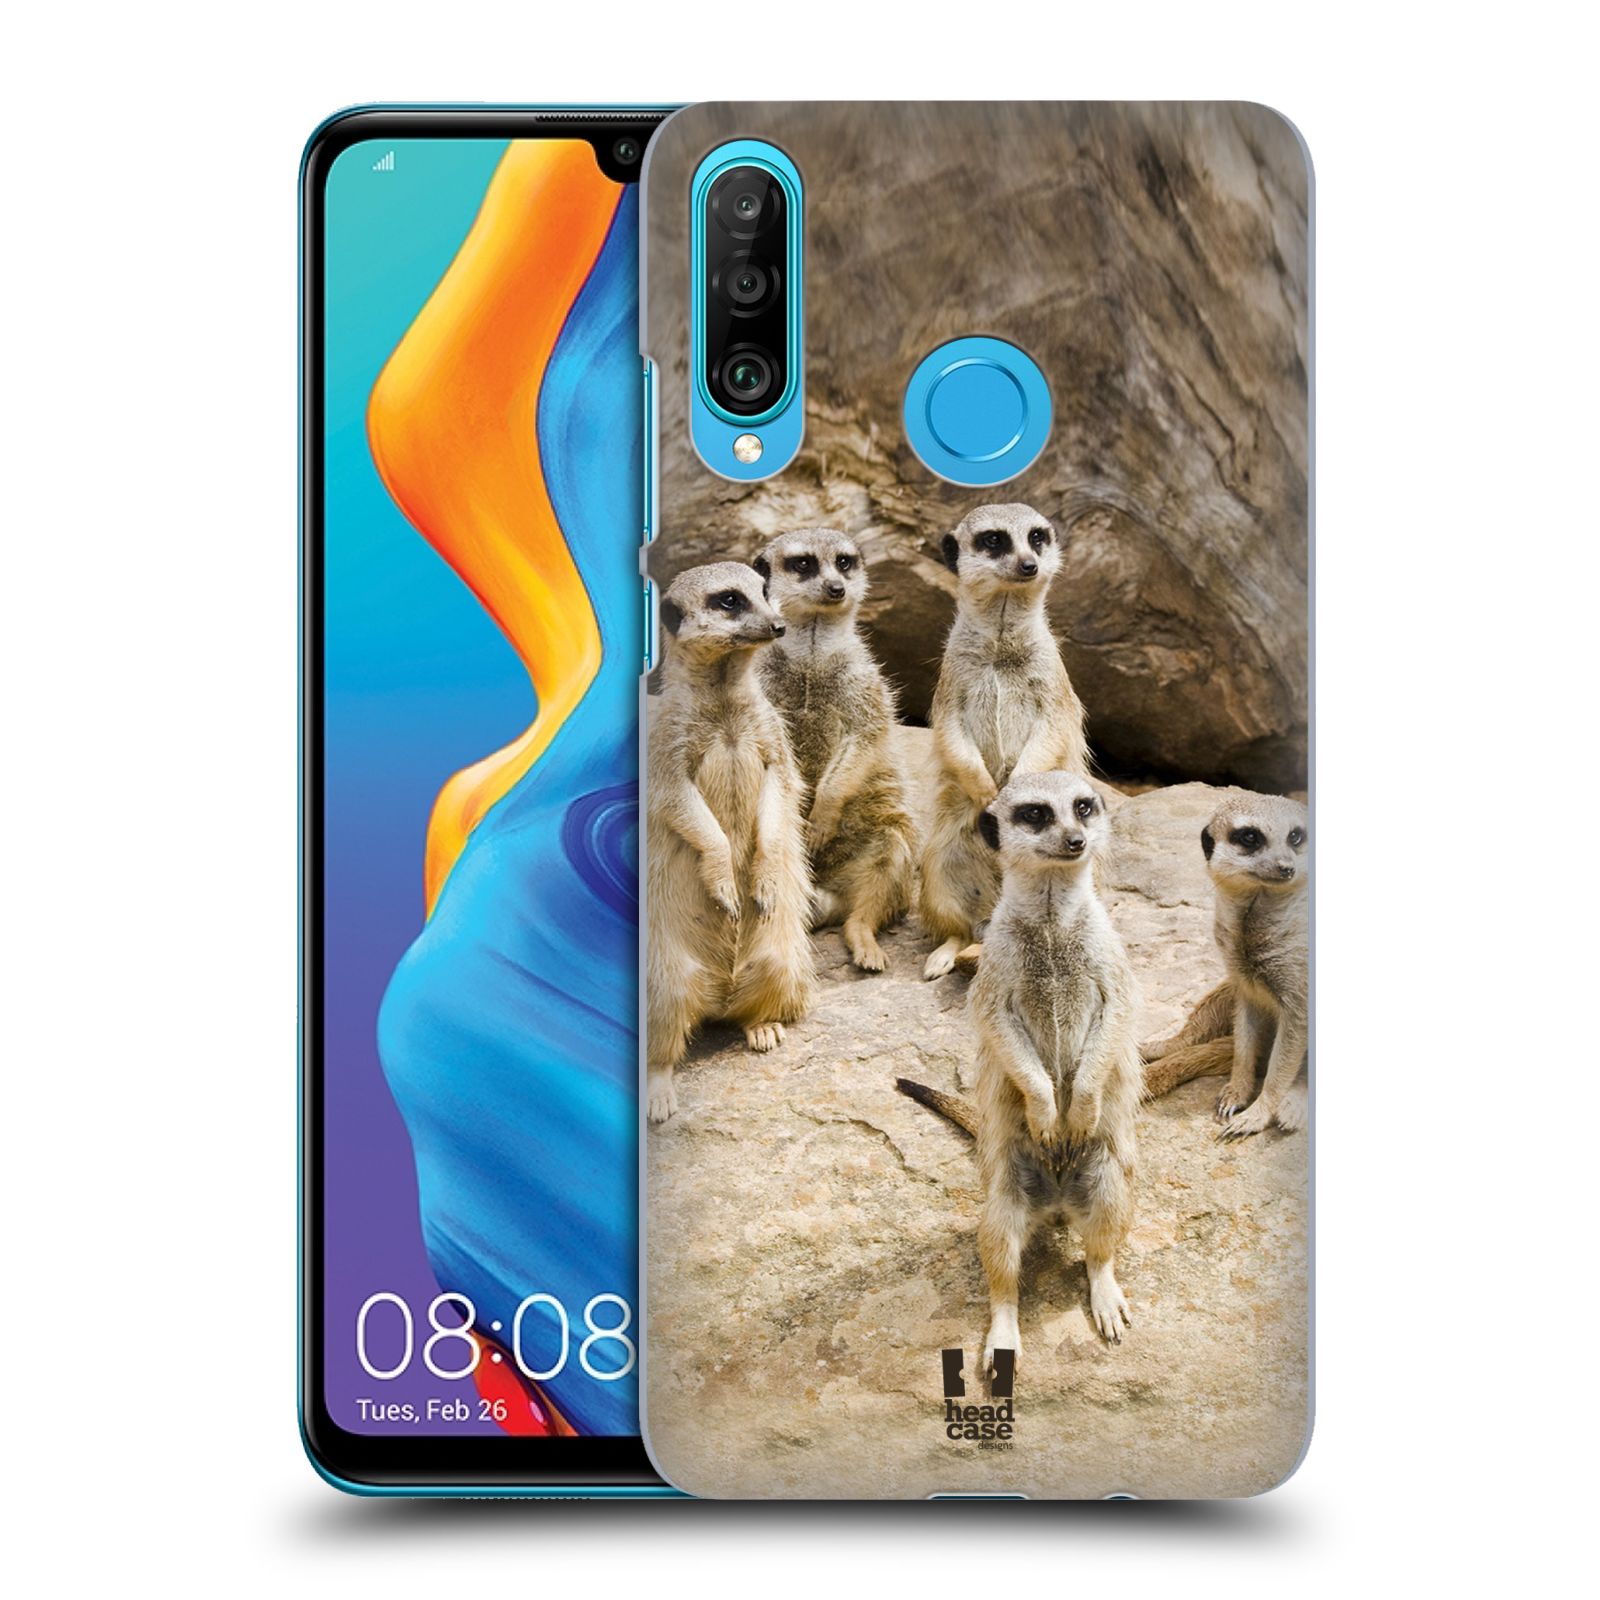 Zadní obal pro mobil Huawei P30 LITE - HEAD CASE - Svět zvířat roztomilé surikaty